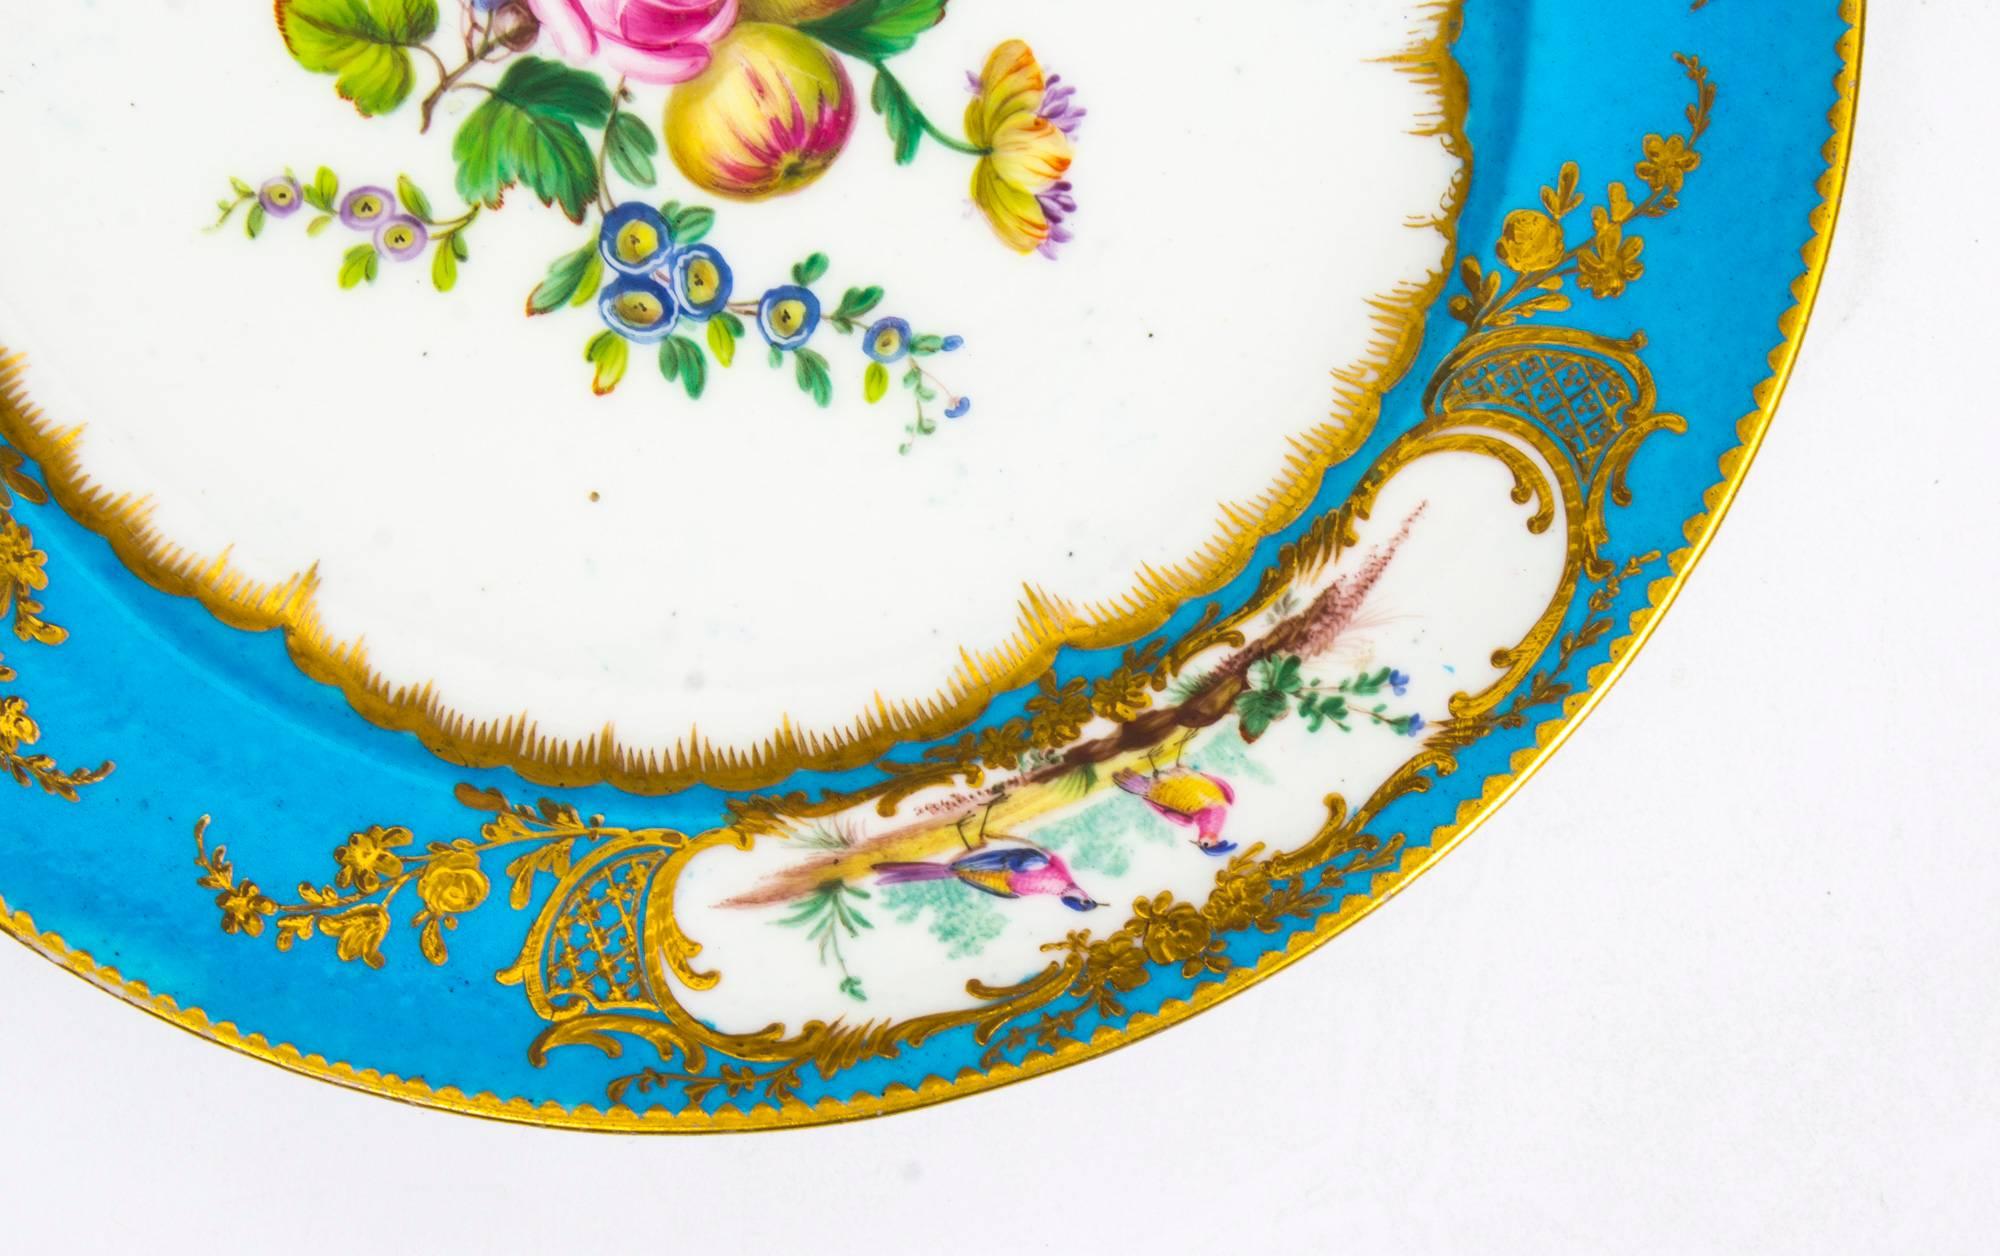 English Antique Pair of Sevres Bleu Celeste Porcelain Plates 18th Century